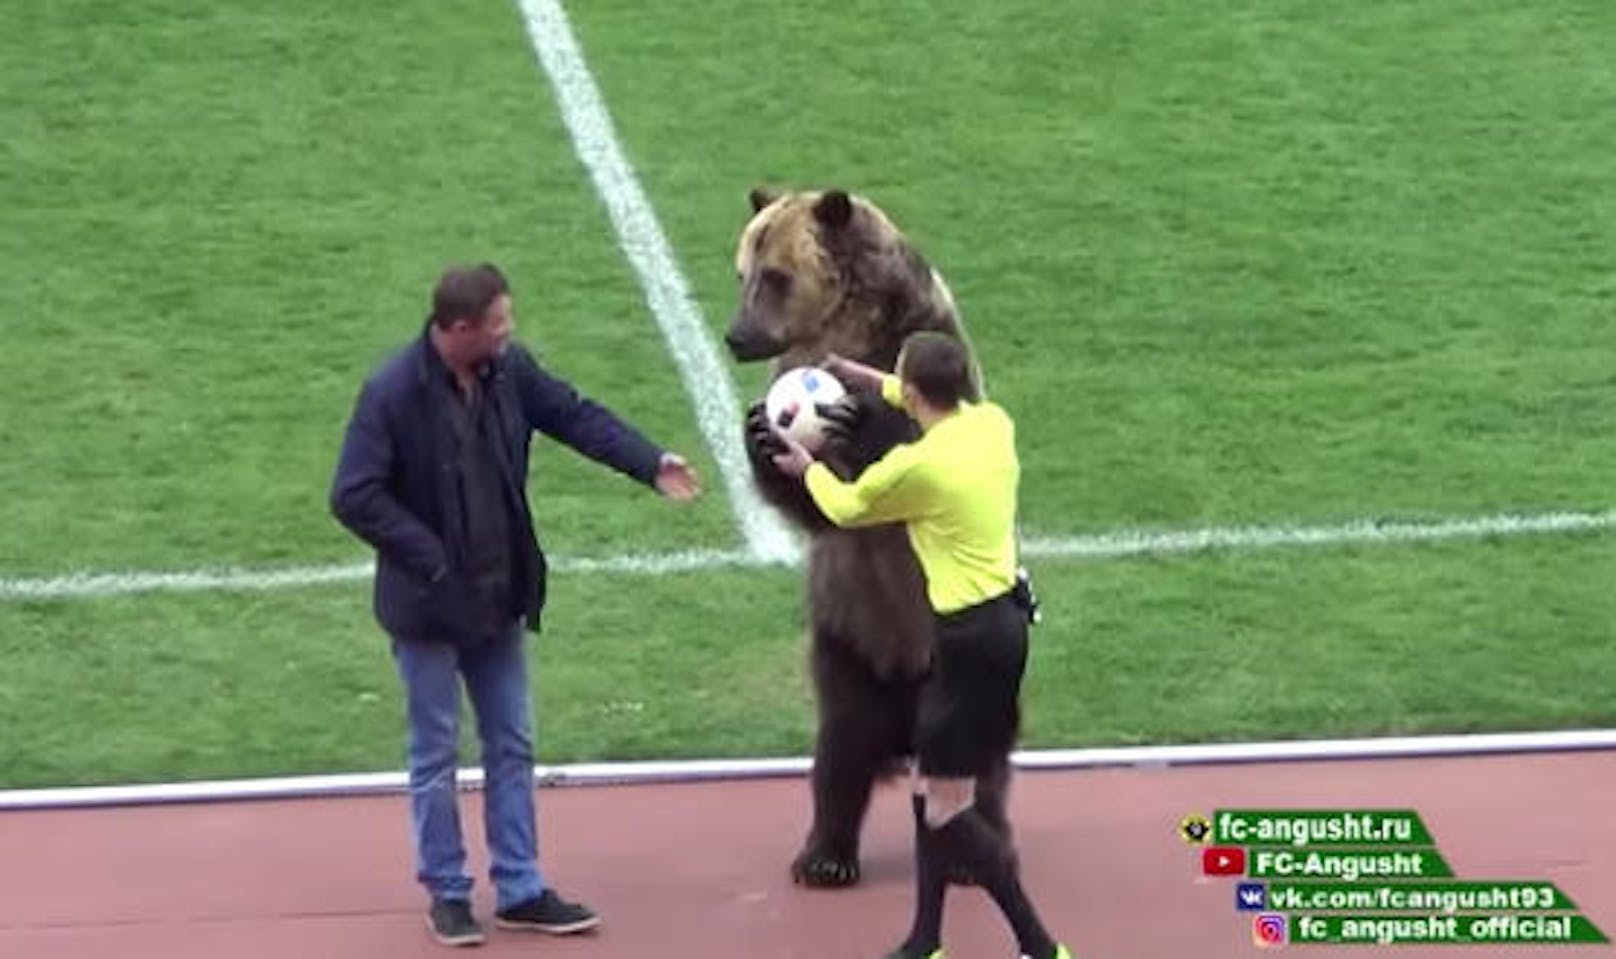 Vor WM in Russland - Bärin übergab Matchball - das Video sorgte für Diskussionen